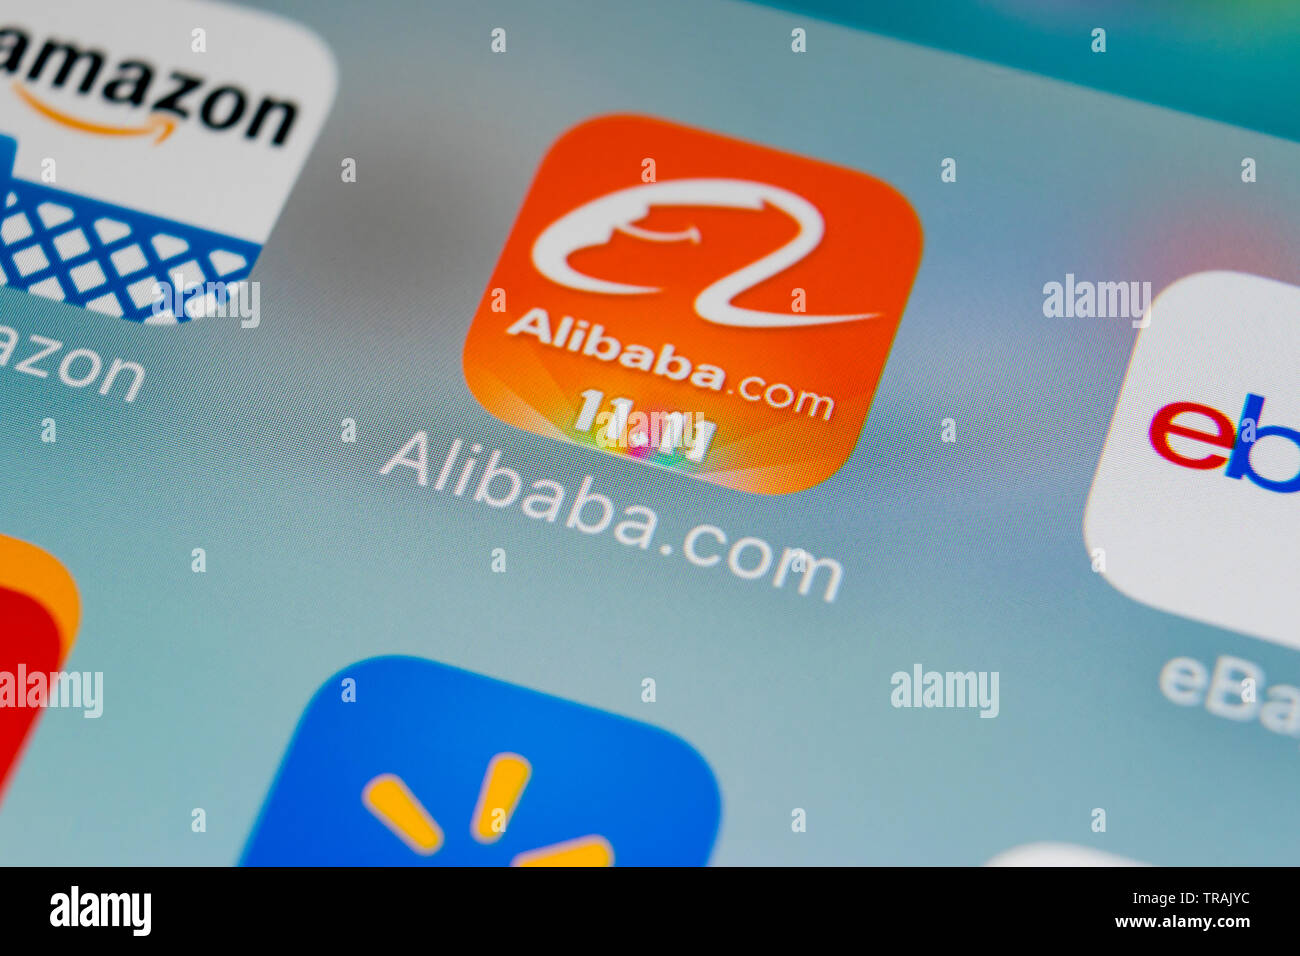 Sankt-Petersburg, Russland, 2. Februar 2018: Alibaba Symbol auf Apple iPhone 8 Bildschirm des Smartphones. Alibaba App Symbol. Alibaba.com ist po Stockfoto